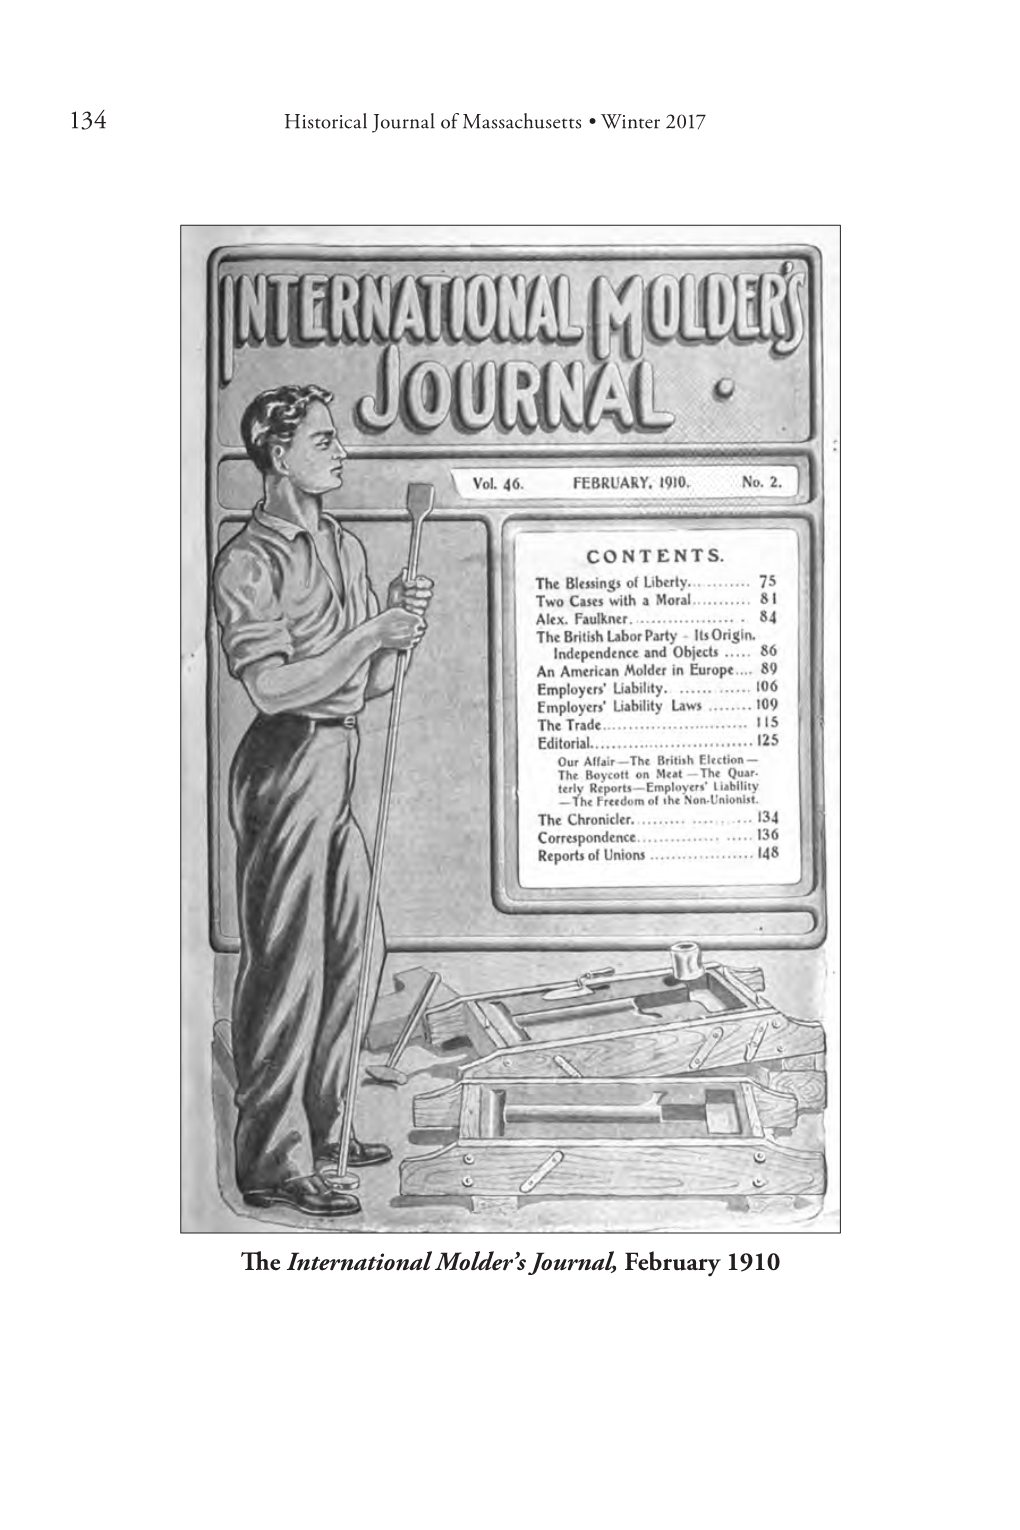 134 the International Molder's Journal, February 1910